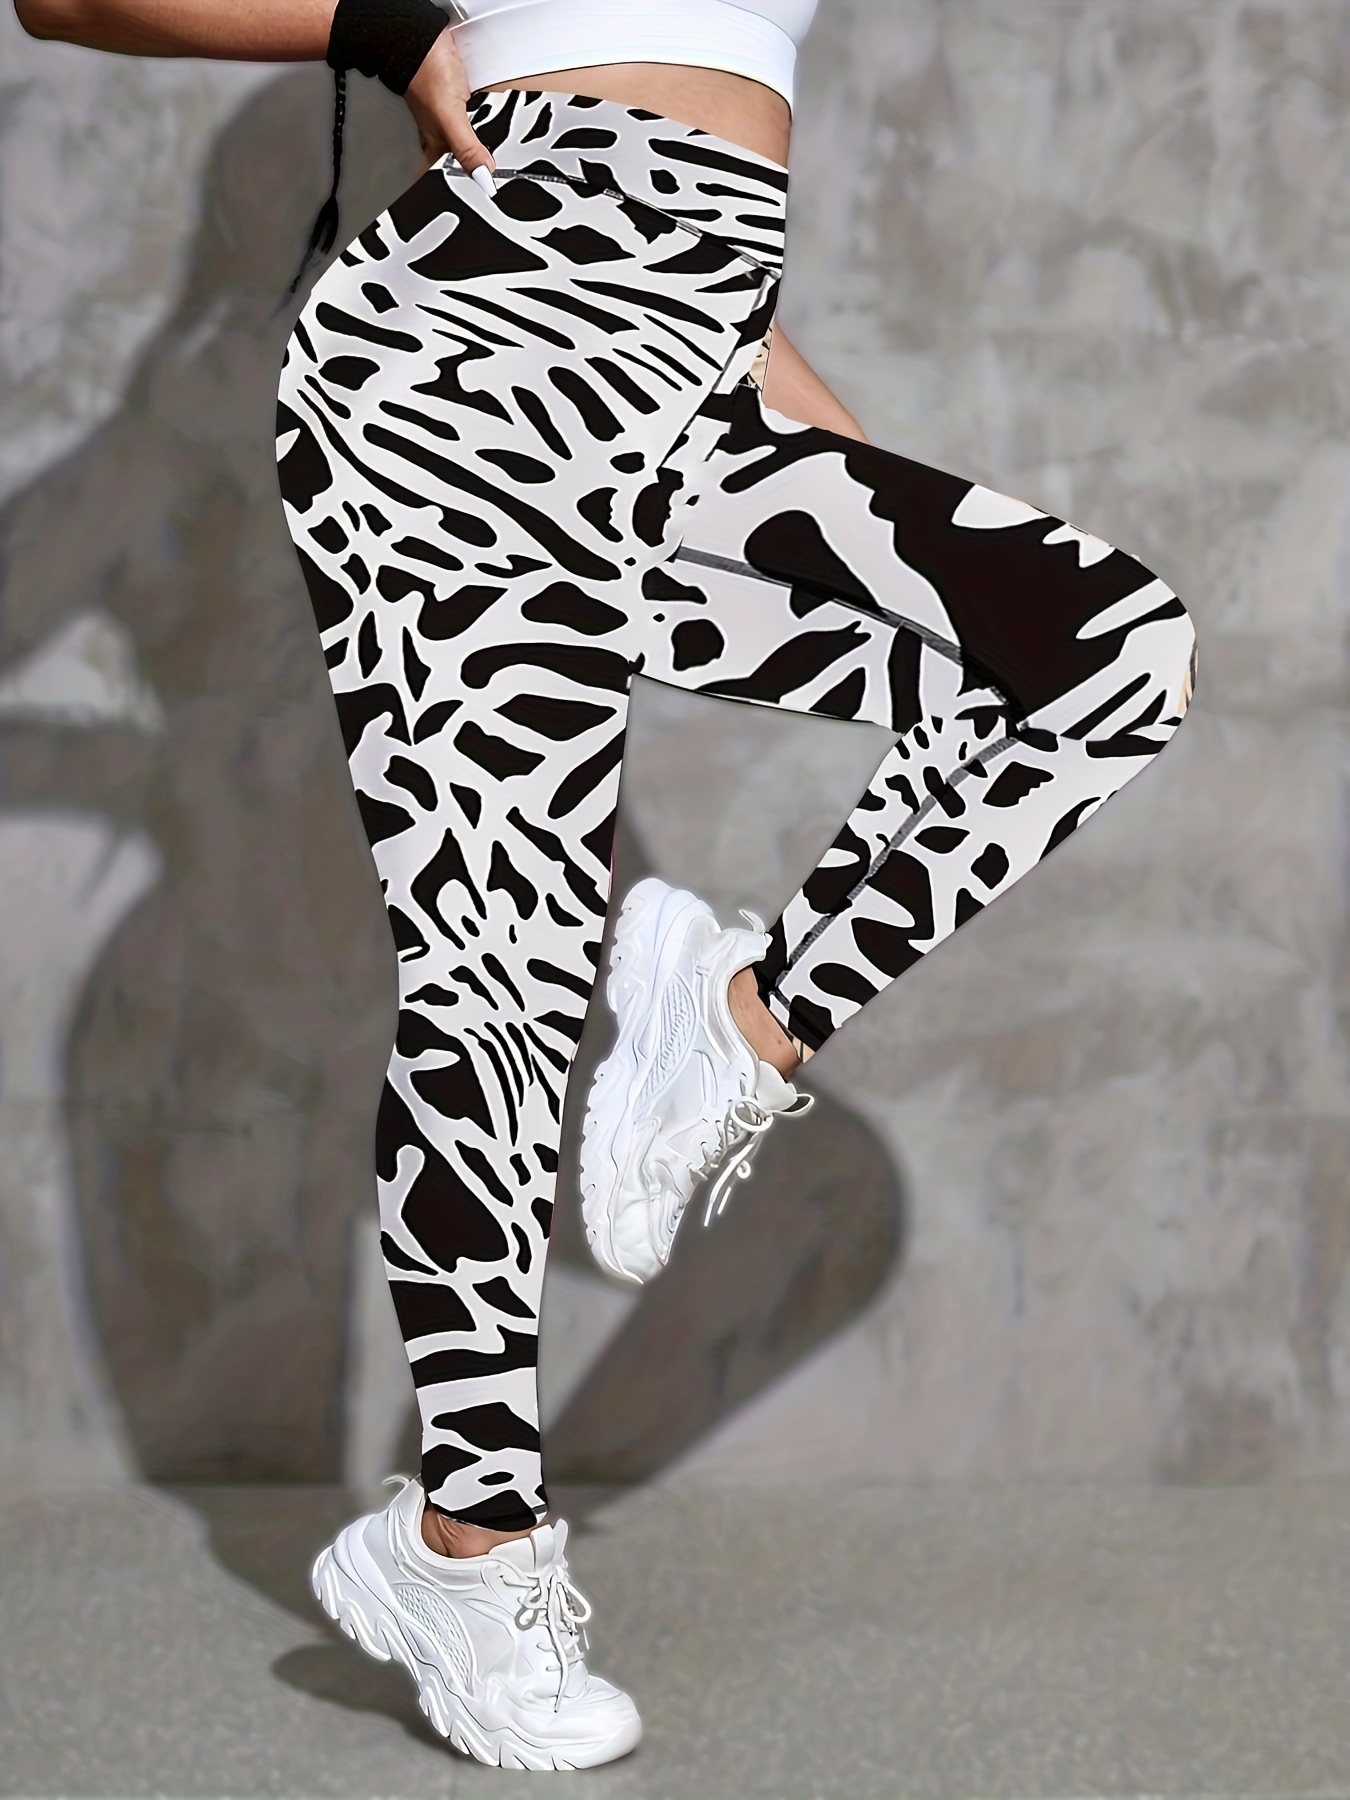 Black and White Zebra Print Plus-size Leggings High Waist Leggings